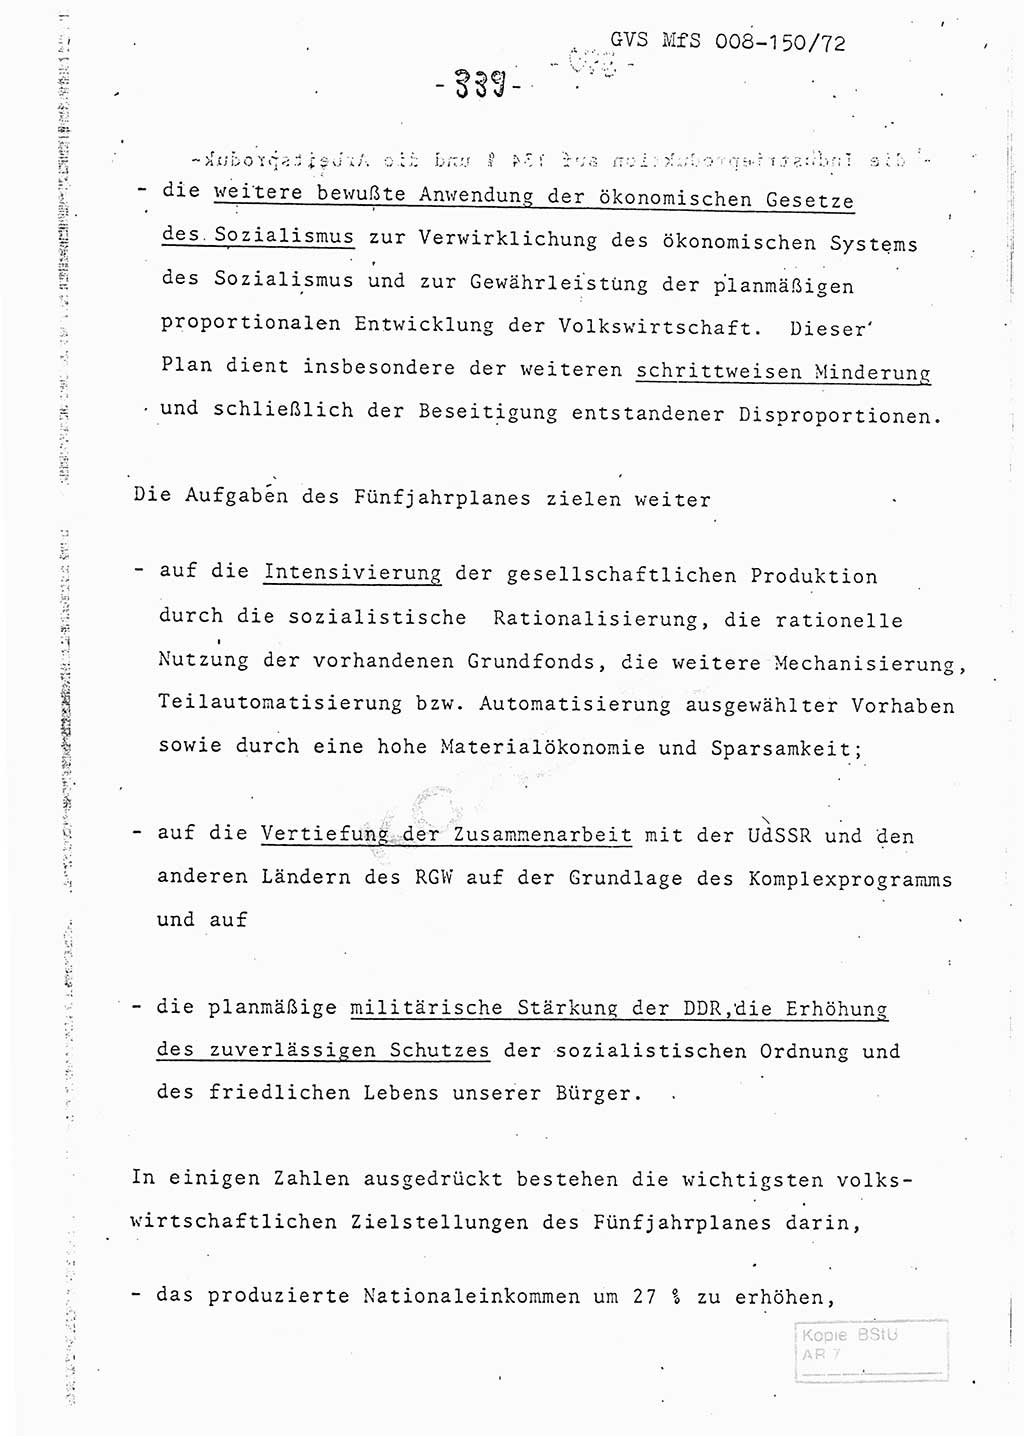 Referat (Entwurf) des Genossen Minister (Generaloberst Erich Mielke) auf der Dienstkonferenz 1972, Ministerium für Staatssicherheit (MfS) [Deutsche Demokratische Republik (DDR)], Der Minister, Geheime Verschlußsache (GVS) 008-150/72, Berlin 25.2.1972, Seite 339 (Ref. Entw. DK MfS DDR Min. GVS 008-150/72 1972, S. 339)